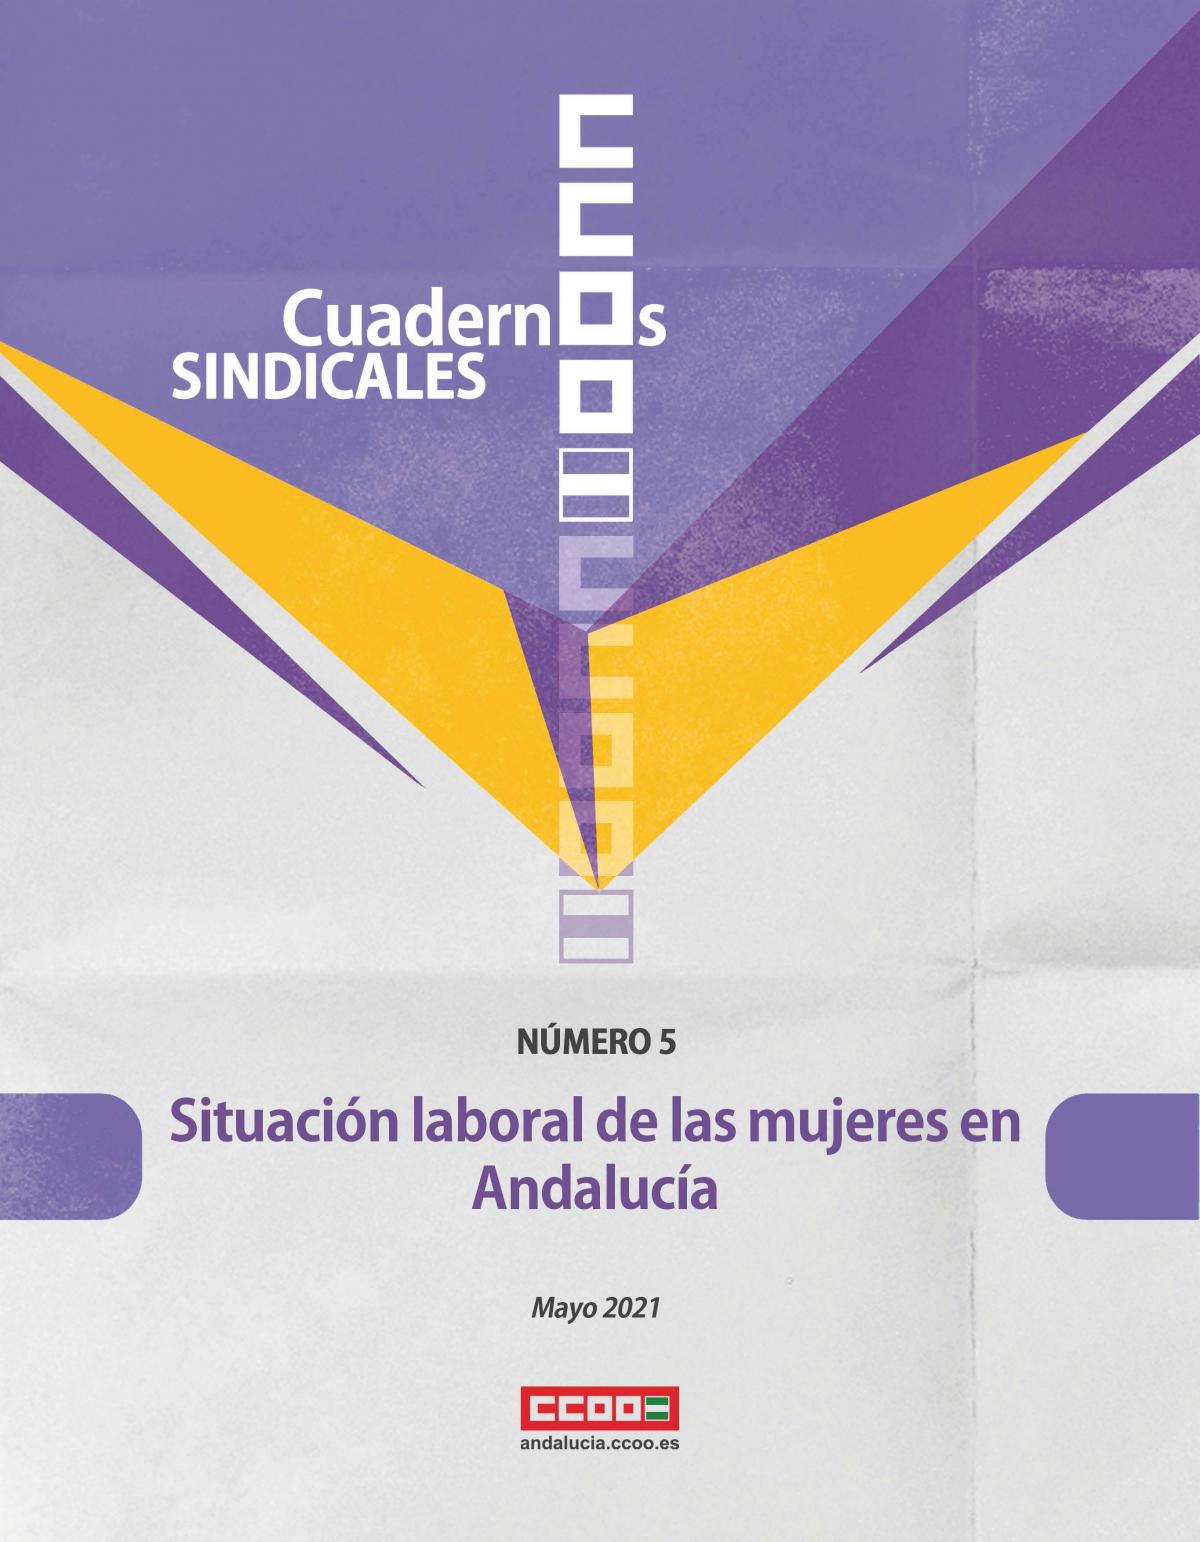 Situación laboral de las mujeres en Andalucía. Cuadernos Sindicales, n. 5 (mayo de 2021).